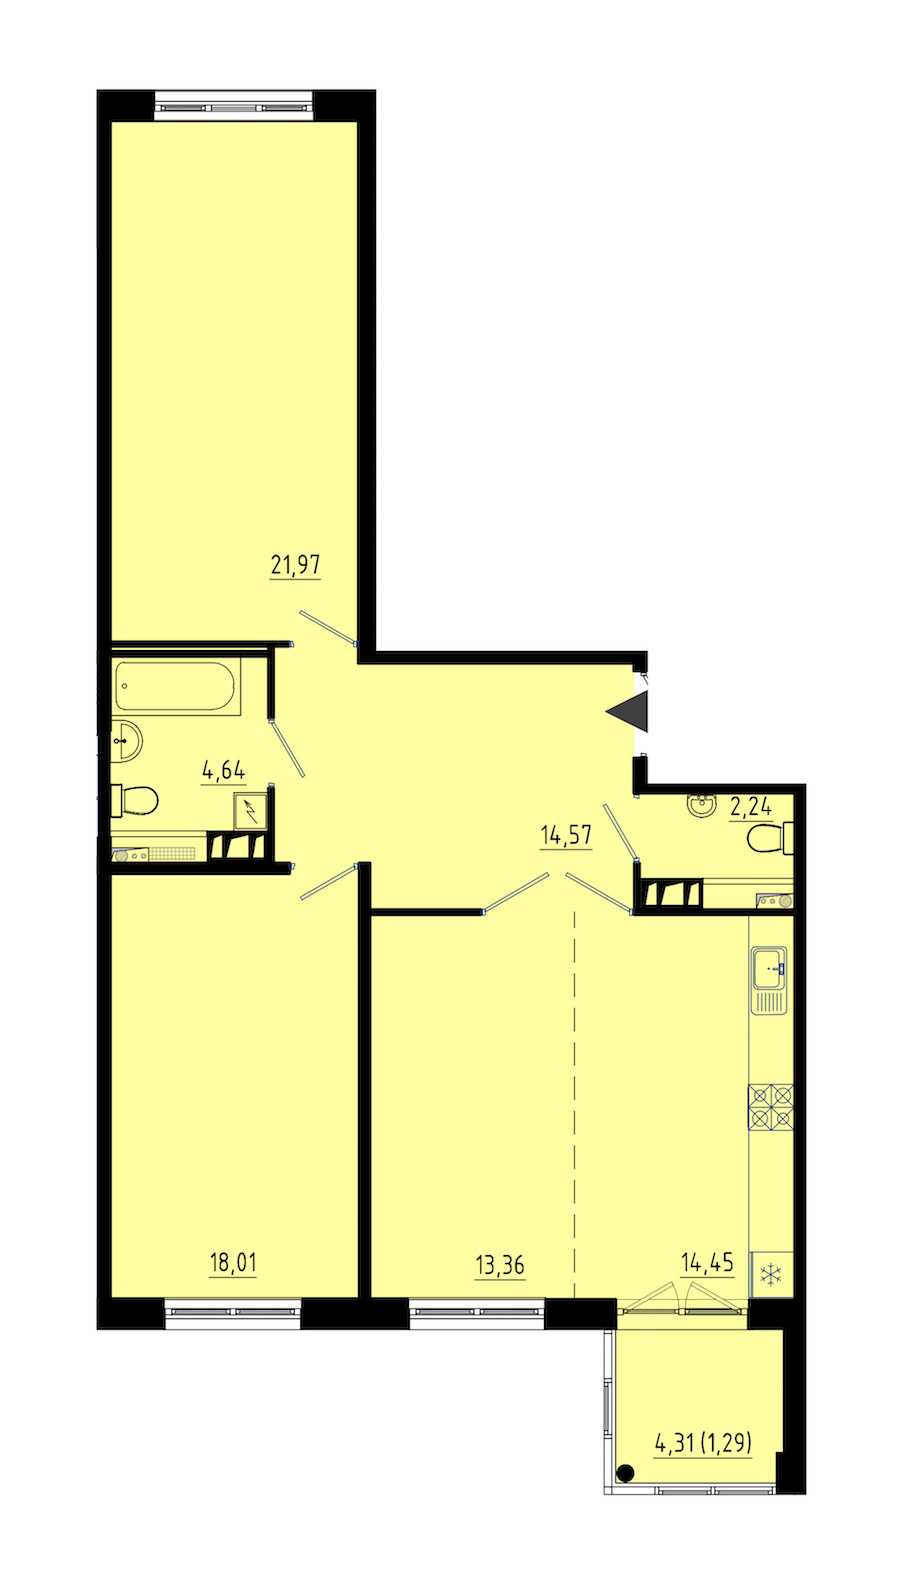 Двухкомнатная квартира в : площадь 90.5 м2 , этаж: 1 – купить в Санкт-Петербурге